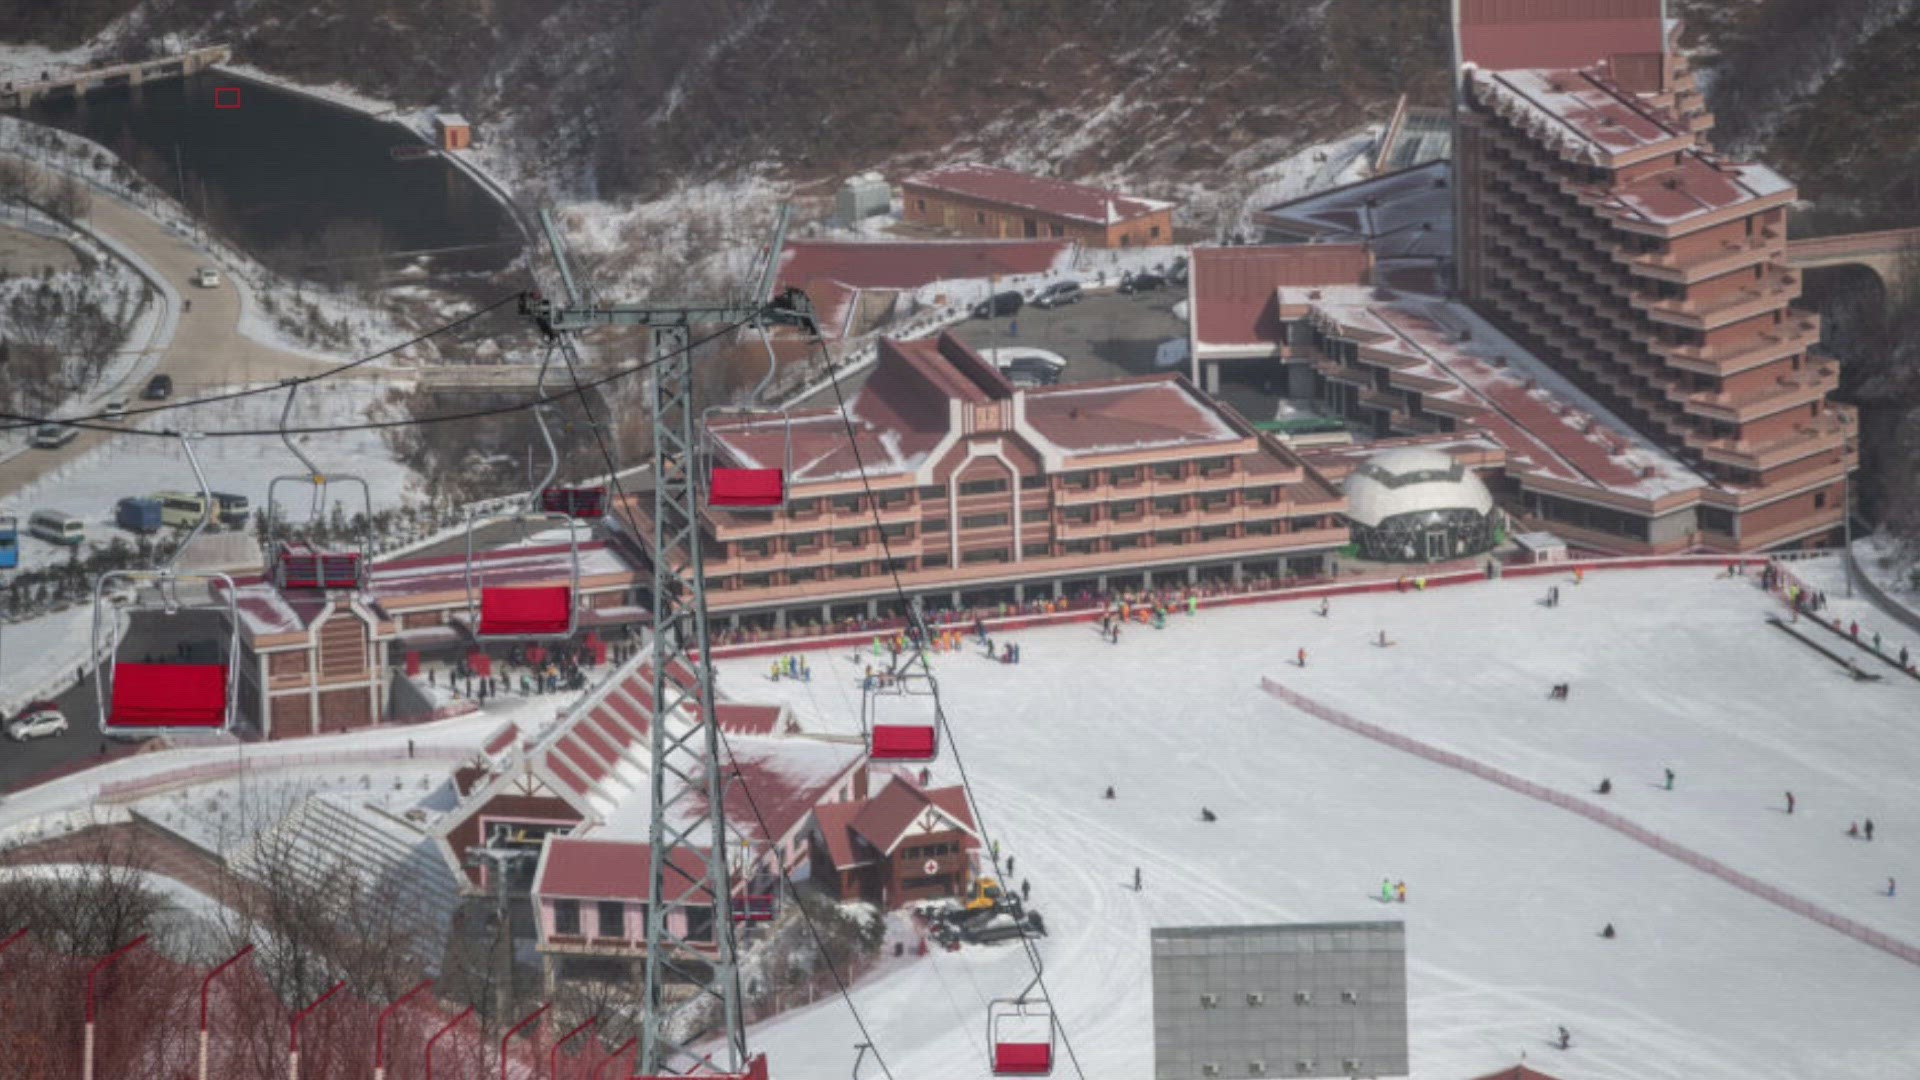 North Korea opens luxury ski resort to promote tourism.